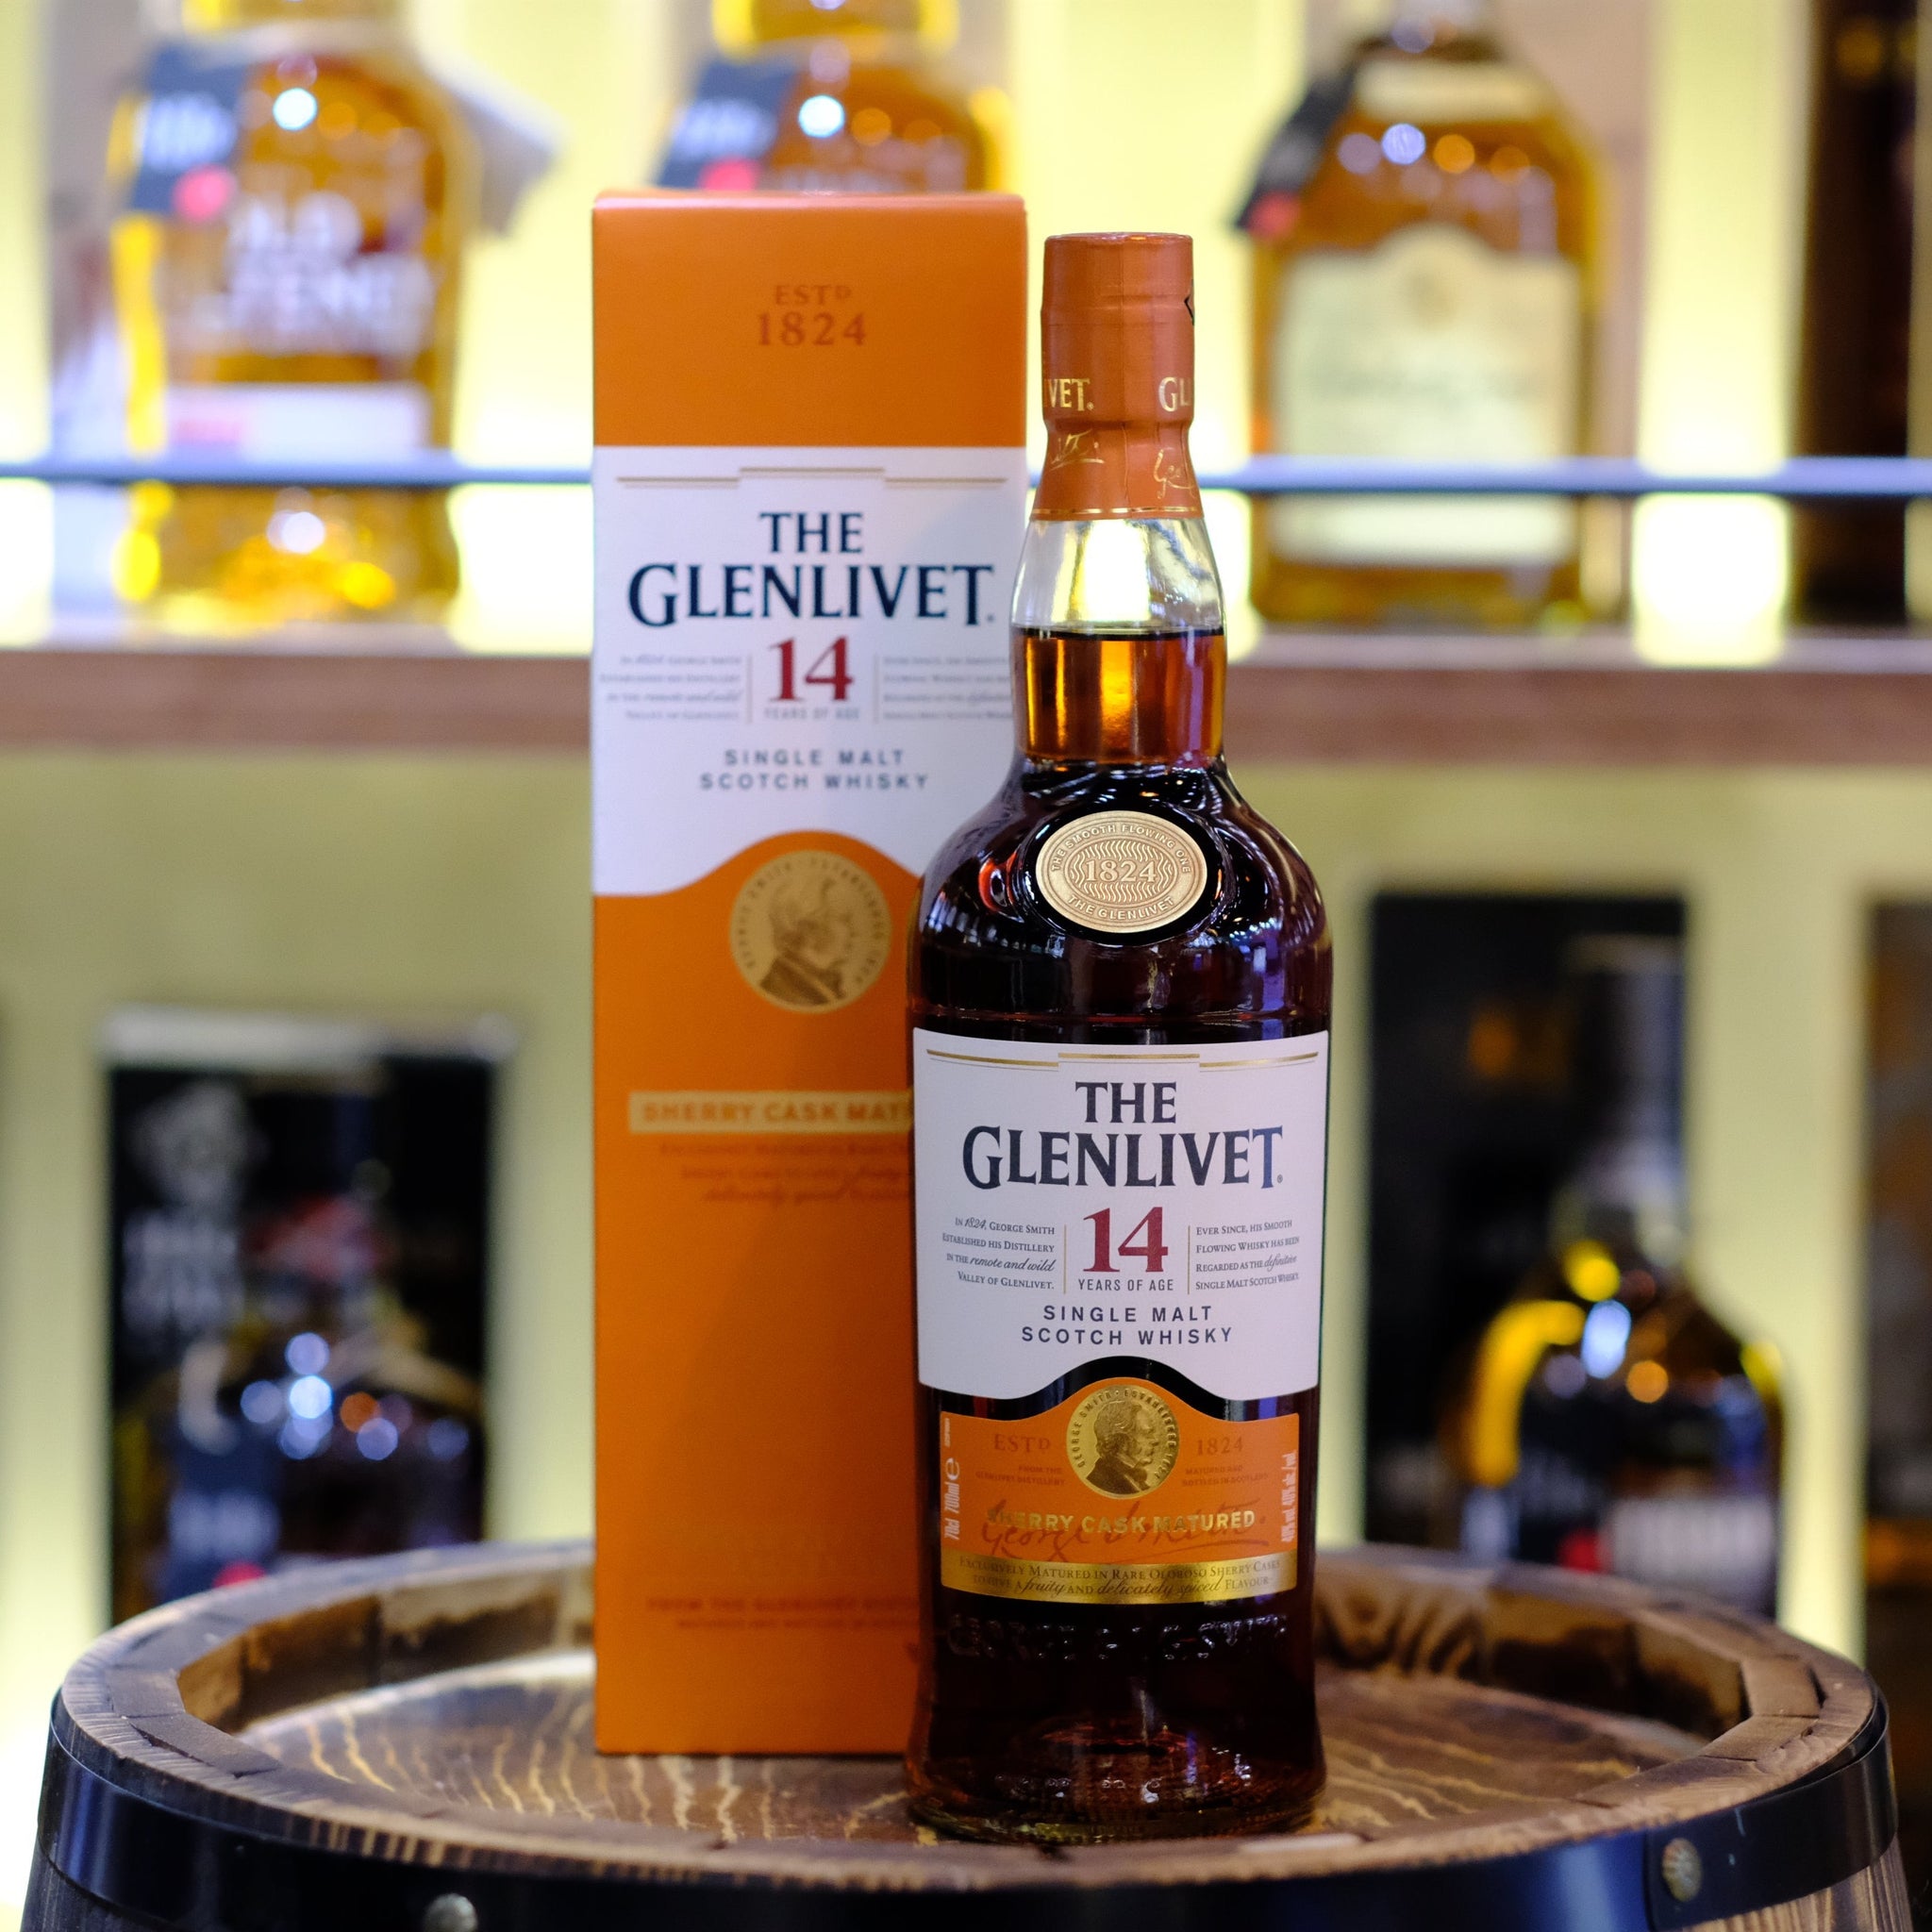 Glenlivet 14 Year Old Sherry Cask Matured Single Malt Scotch Whisky